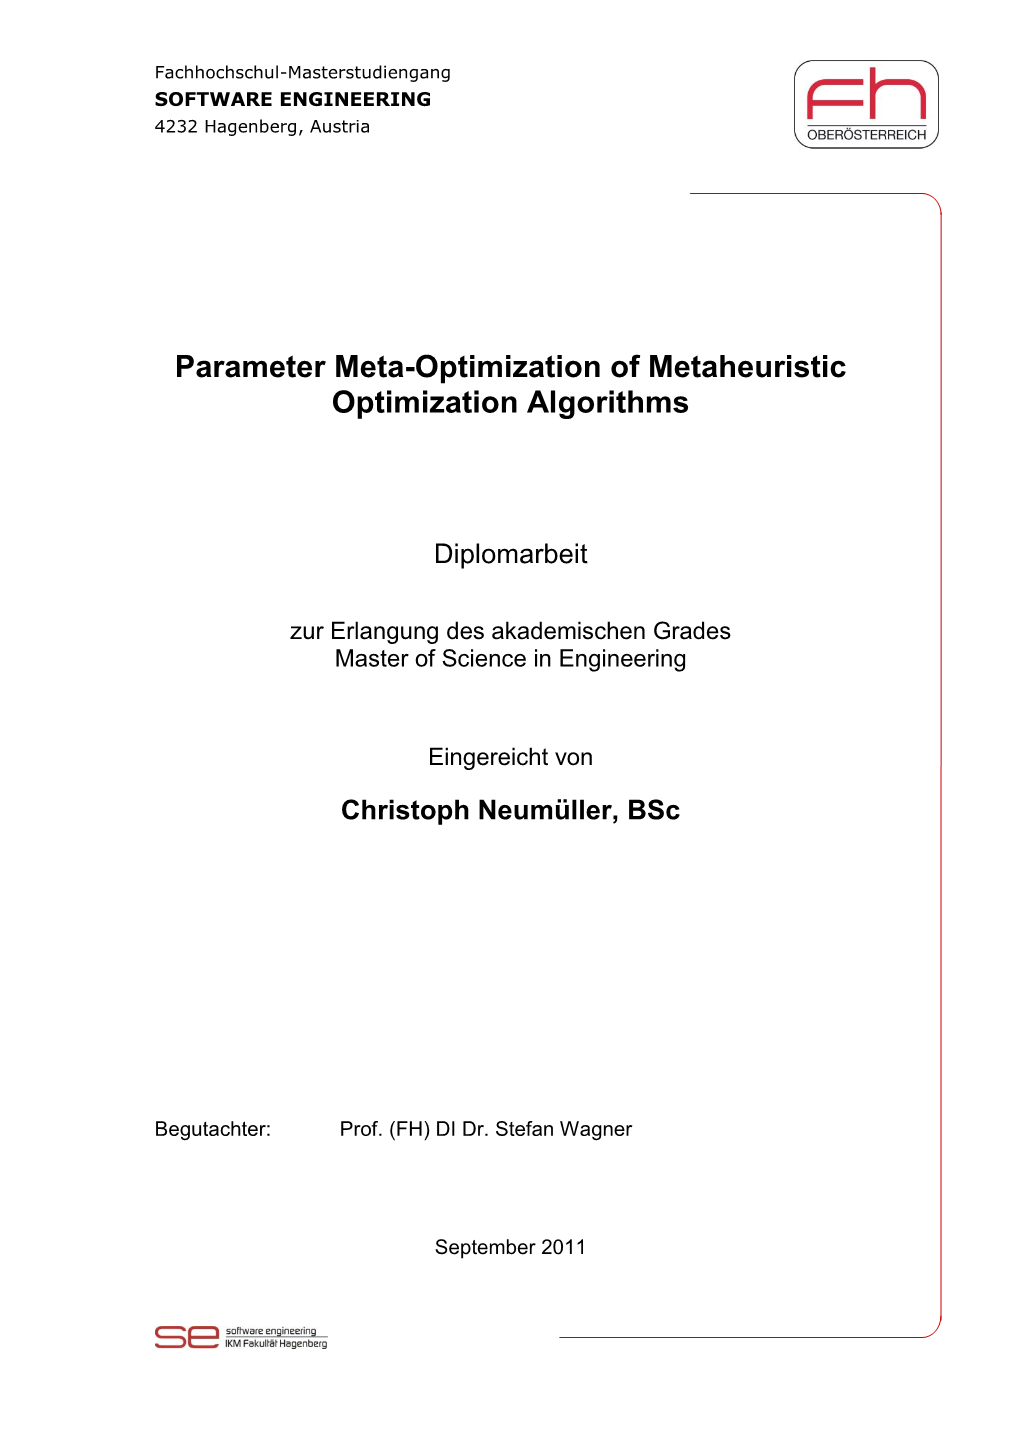 Parameter Meta-Optimization of Metaheuristic Optimization Algorithms